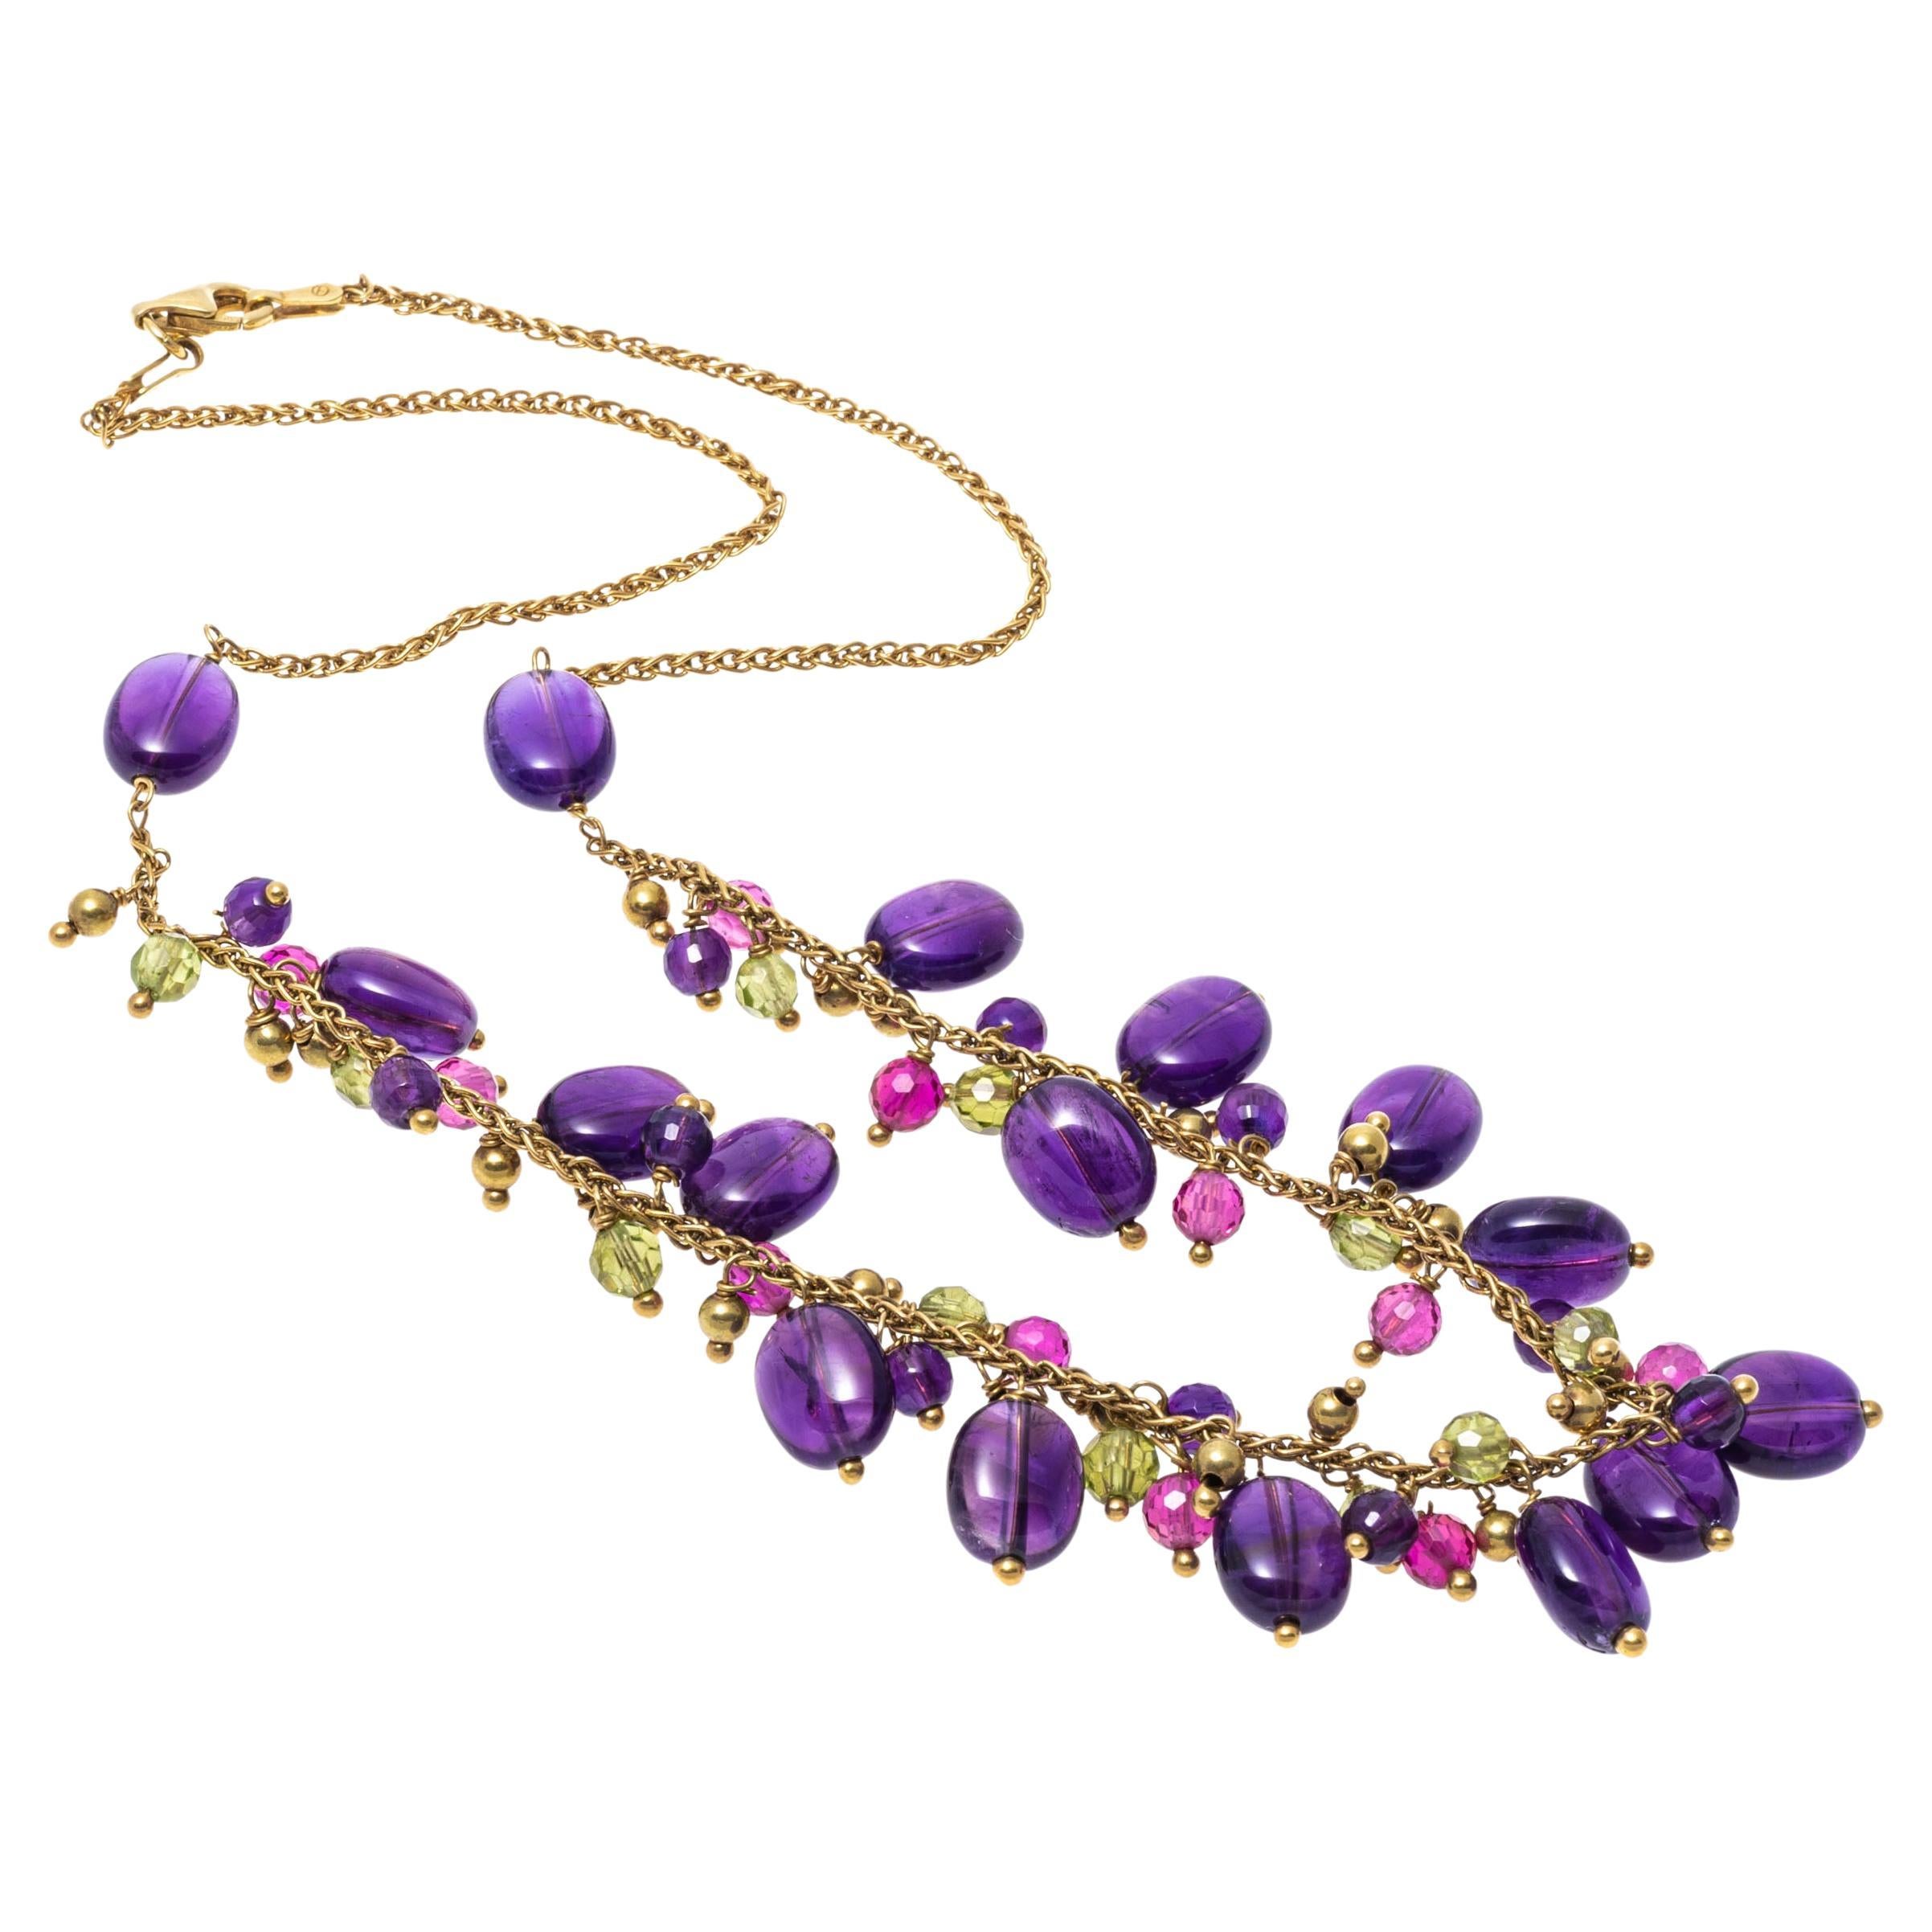 Halskette mit farbenfrohem Amethyst, Rubin und Peridot-Cluster-Perlenkette